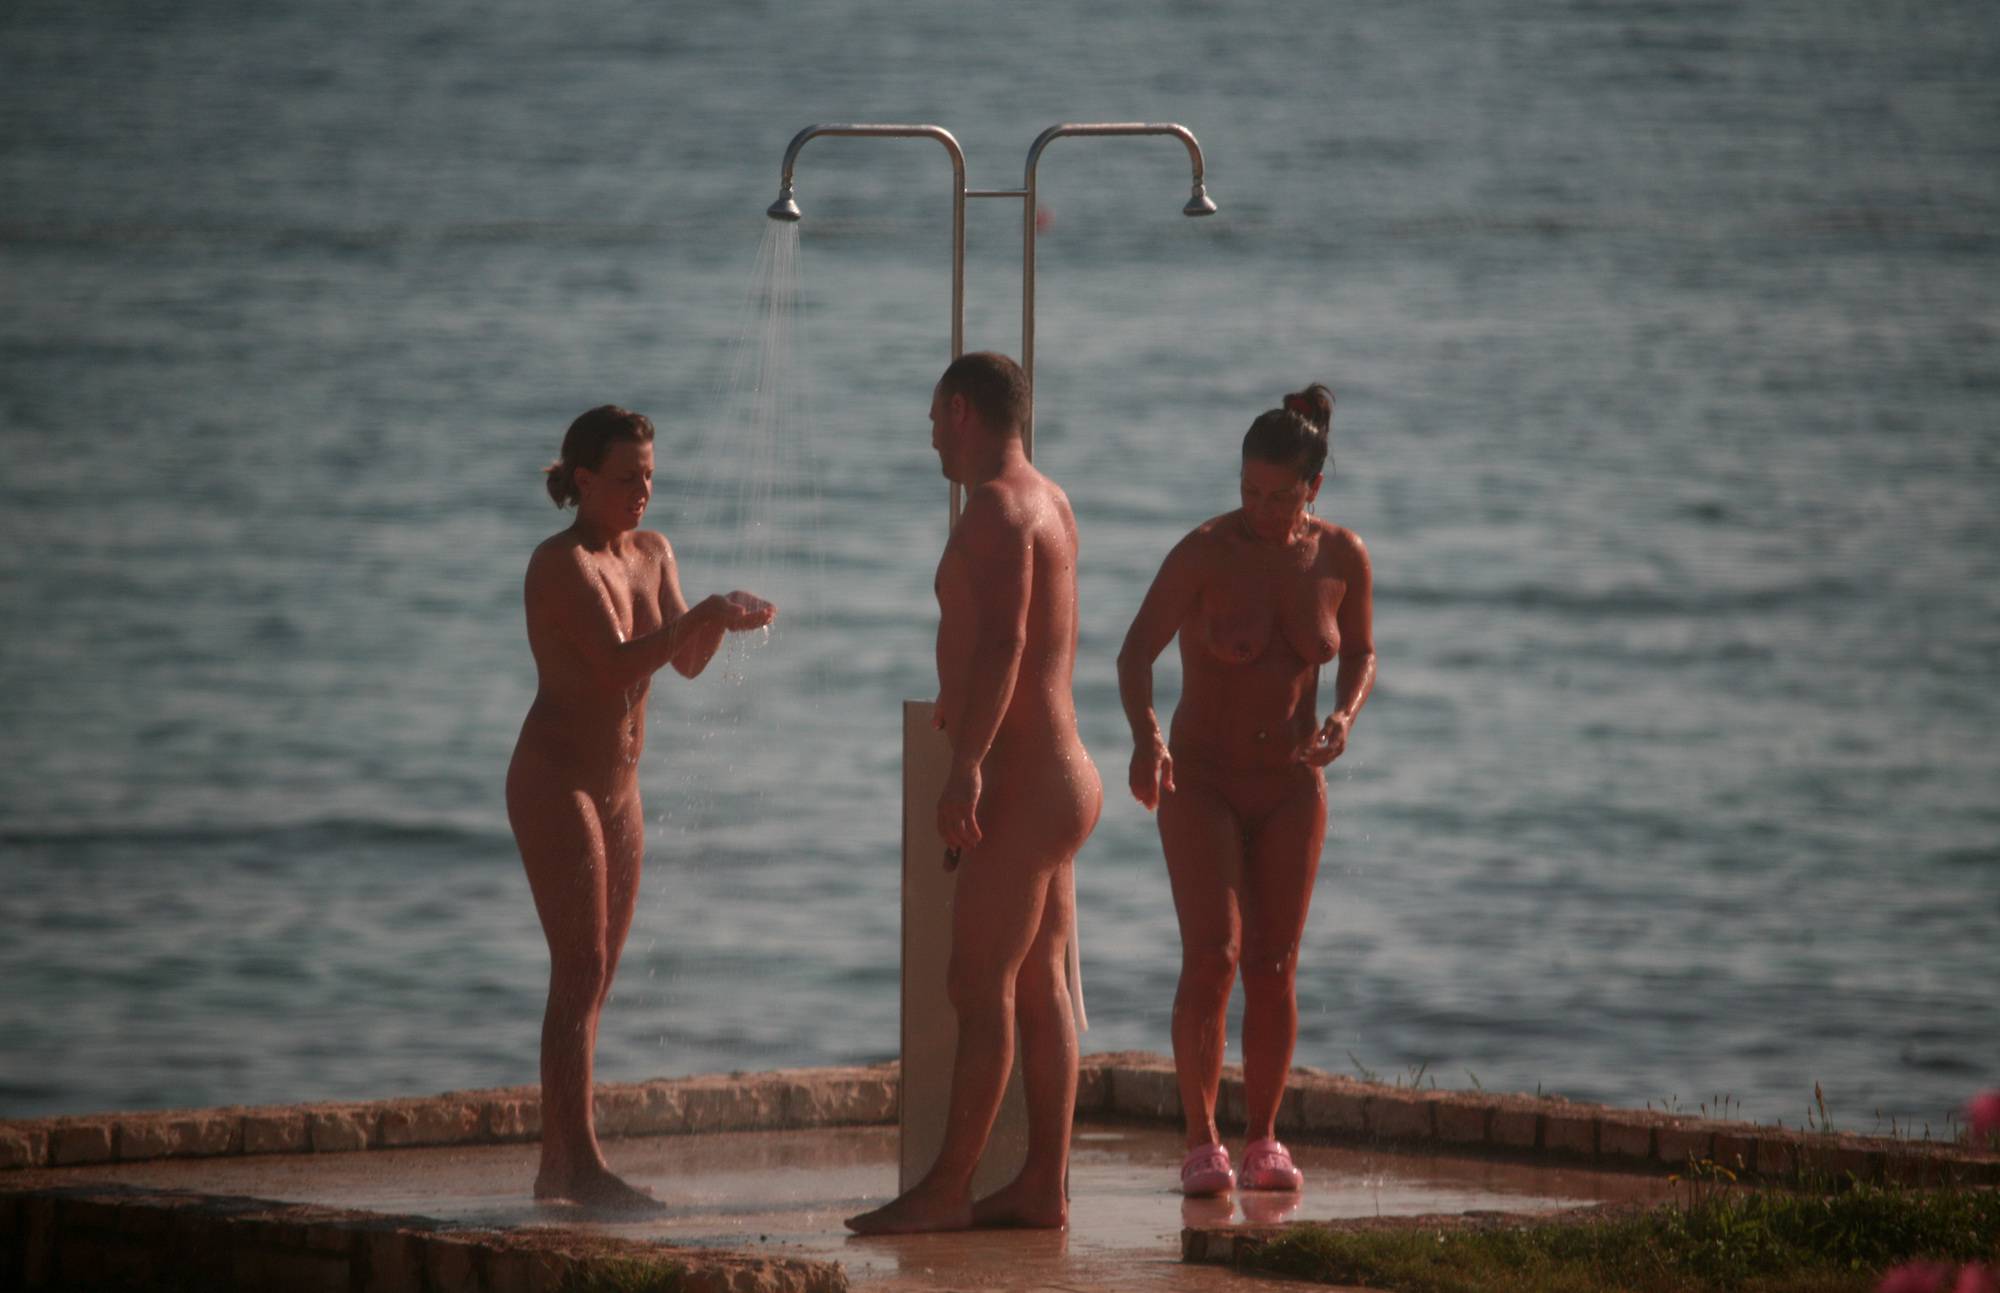 Pure Nudism Images-Naturist Shower at Dusk - 2